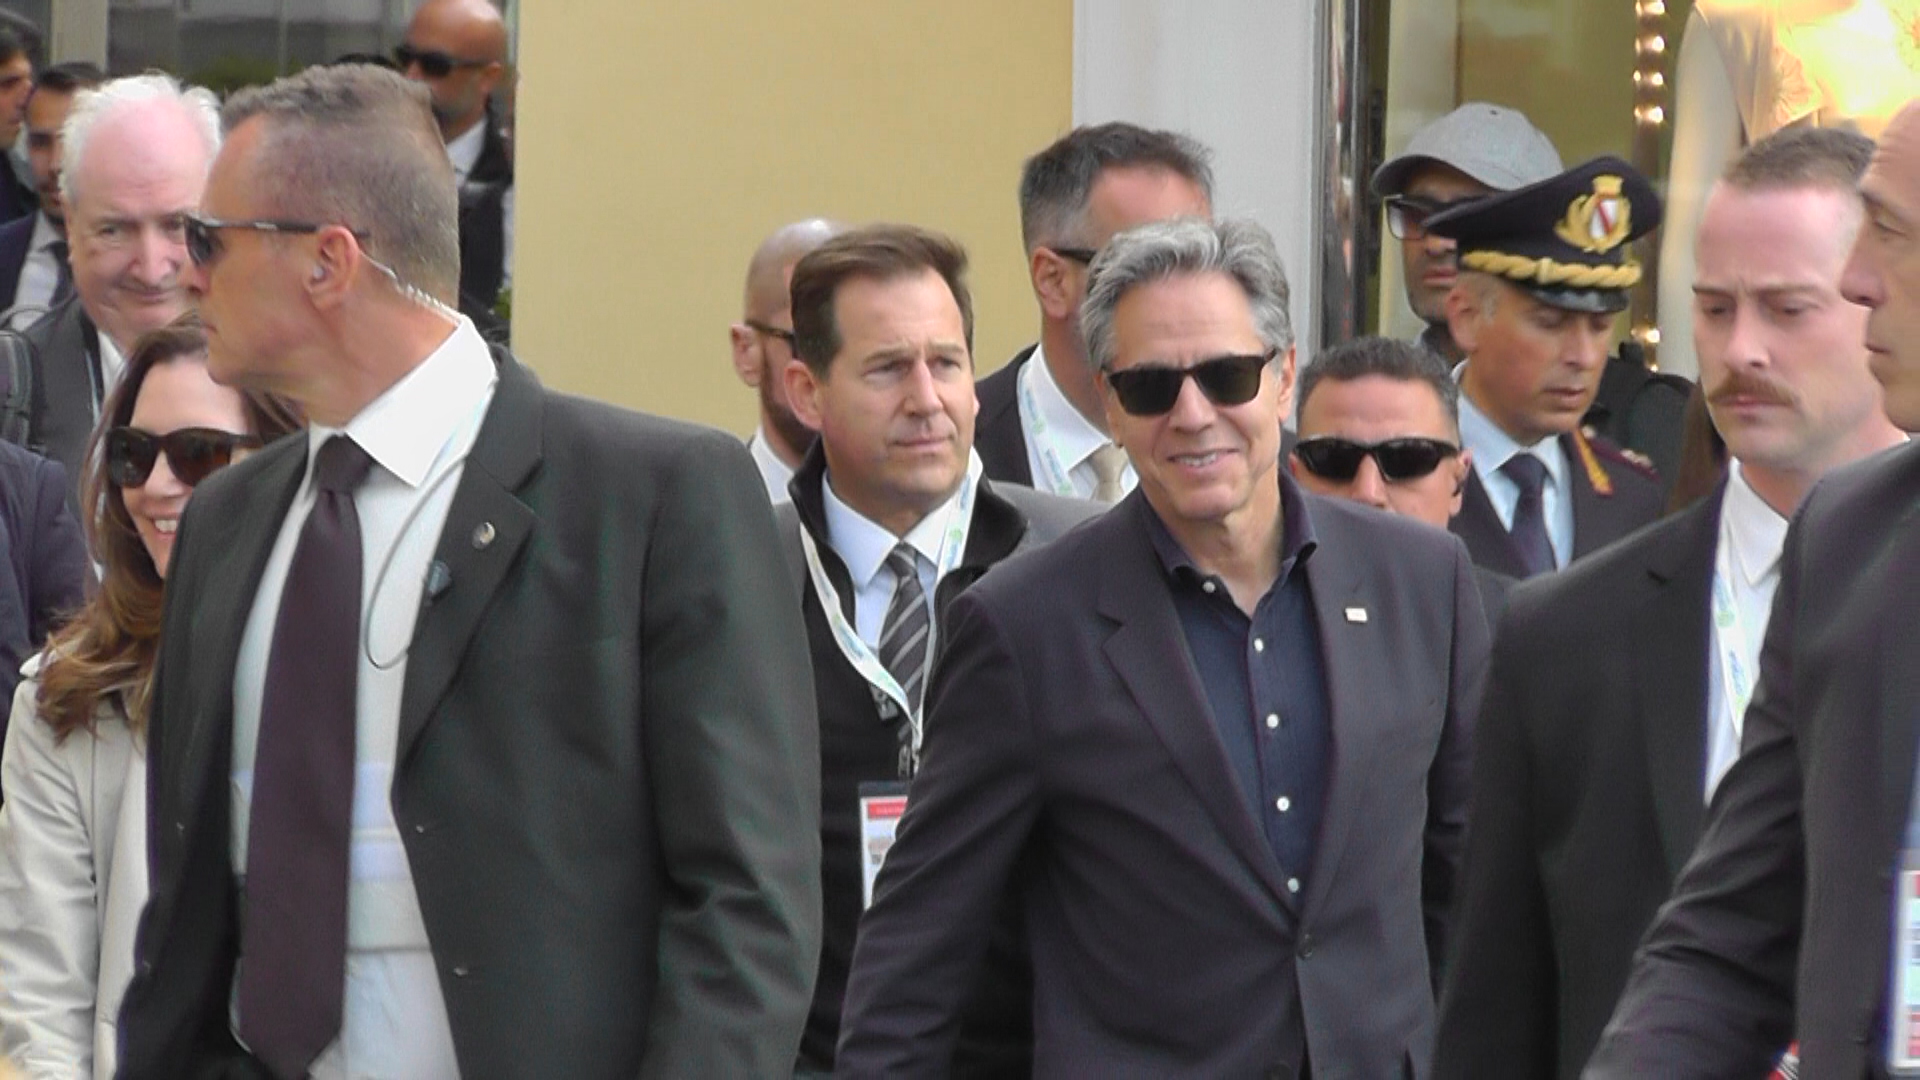 G7 Esteri: le immagini dell’arrivo a Capri del segretario di stato Usa Antony Blinken (foto e video)